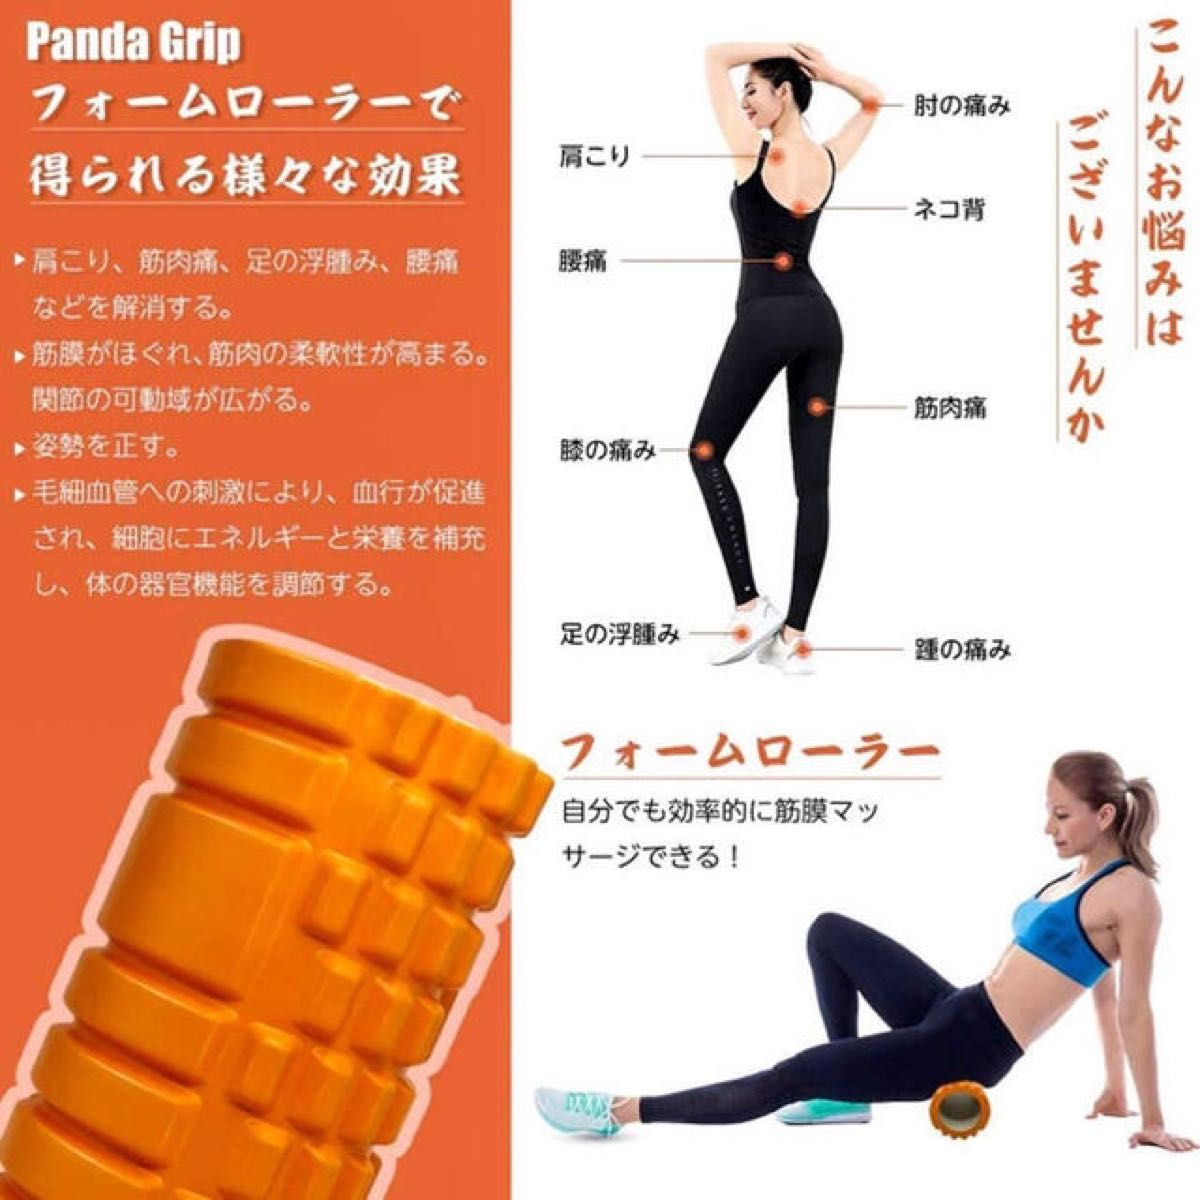 【オレンジ】フォームローラー 筋膜リリース マッサージ グリッド フォームローラー ヨガポール トレーニング フィットネス